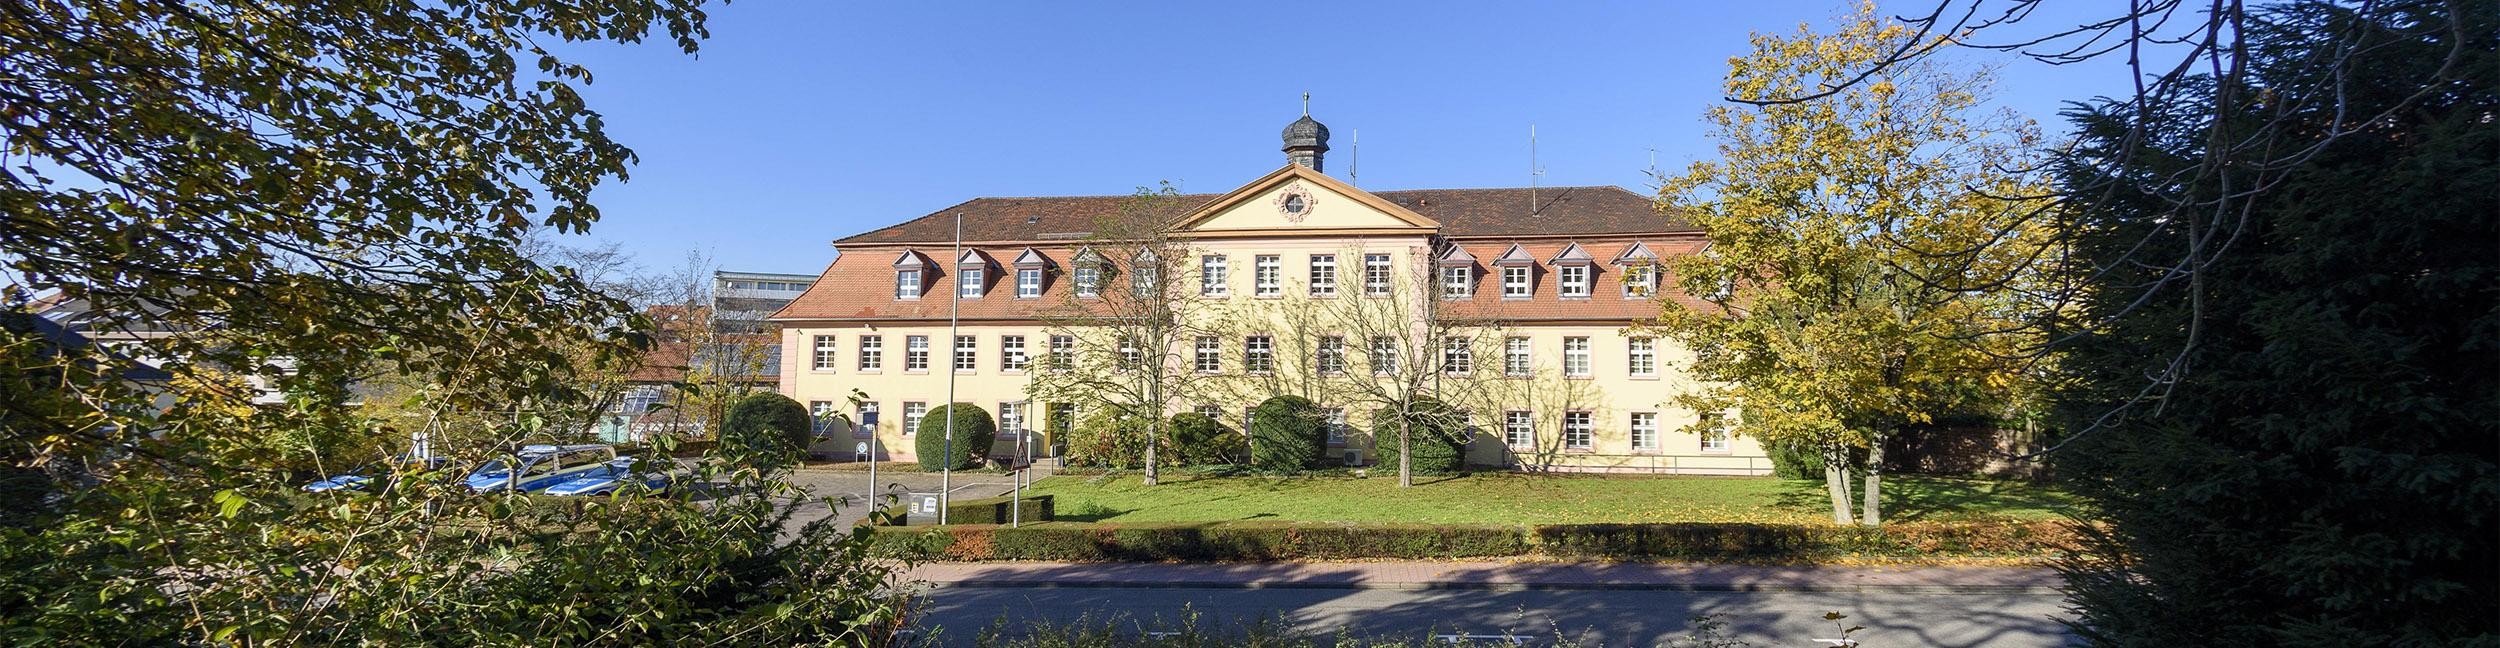 Polizeigebäude in Rastatt